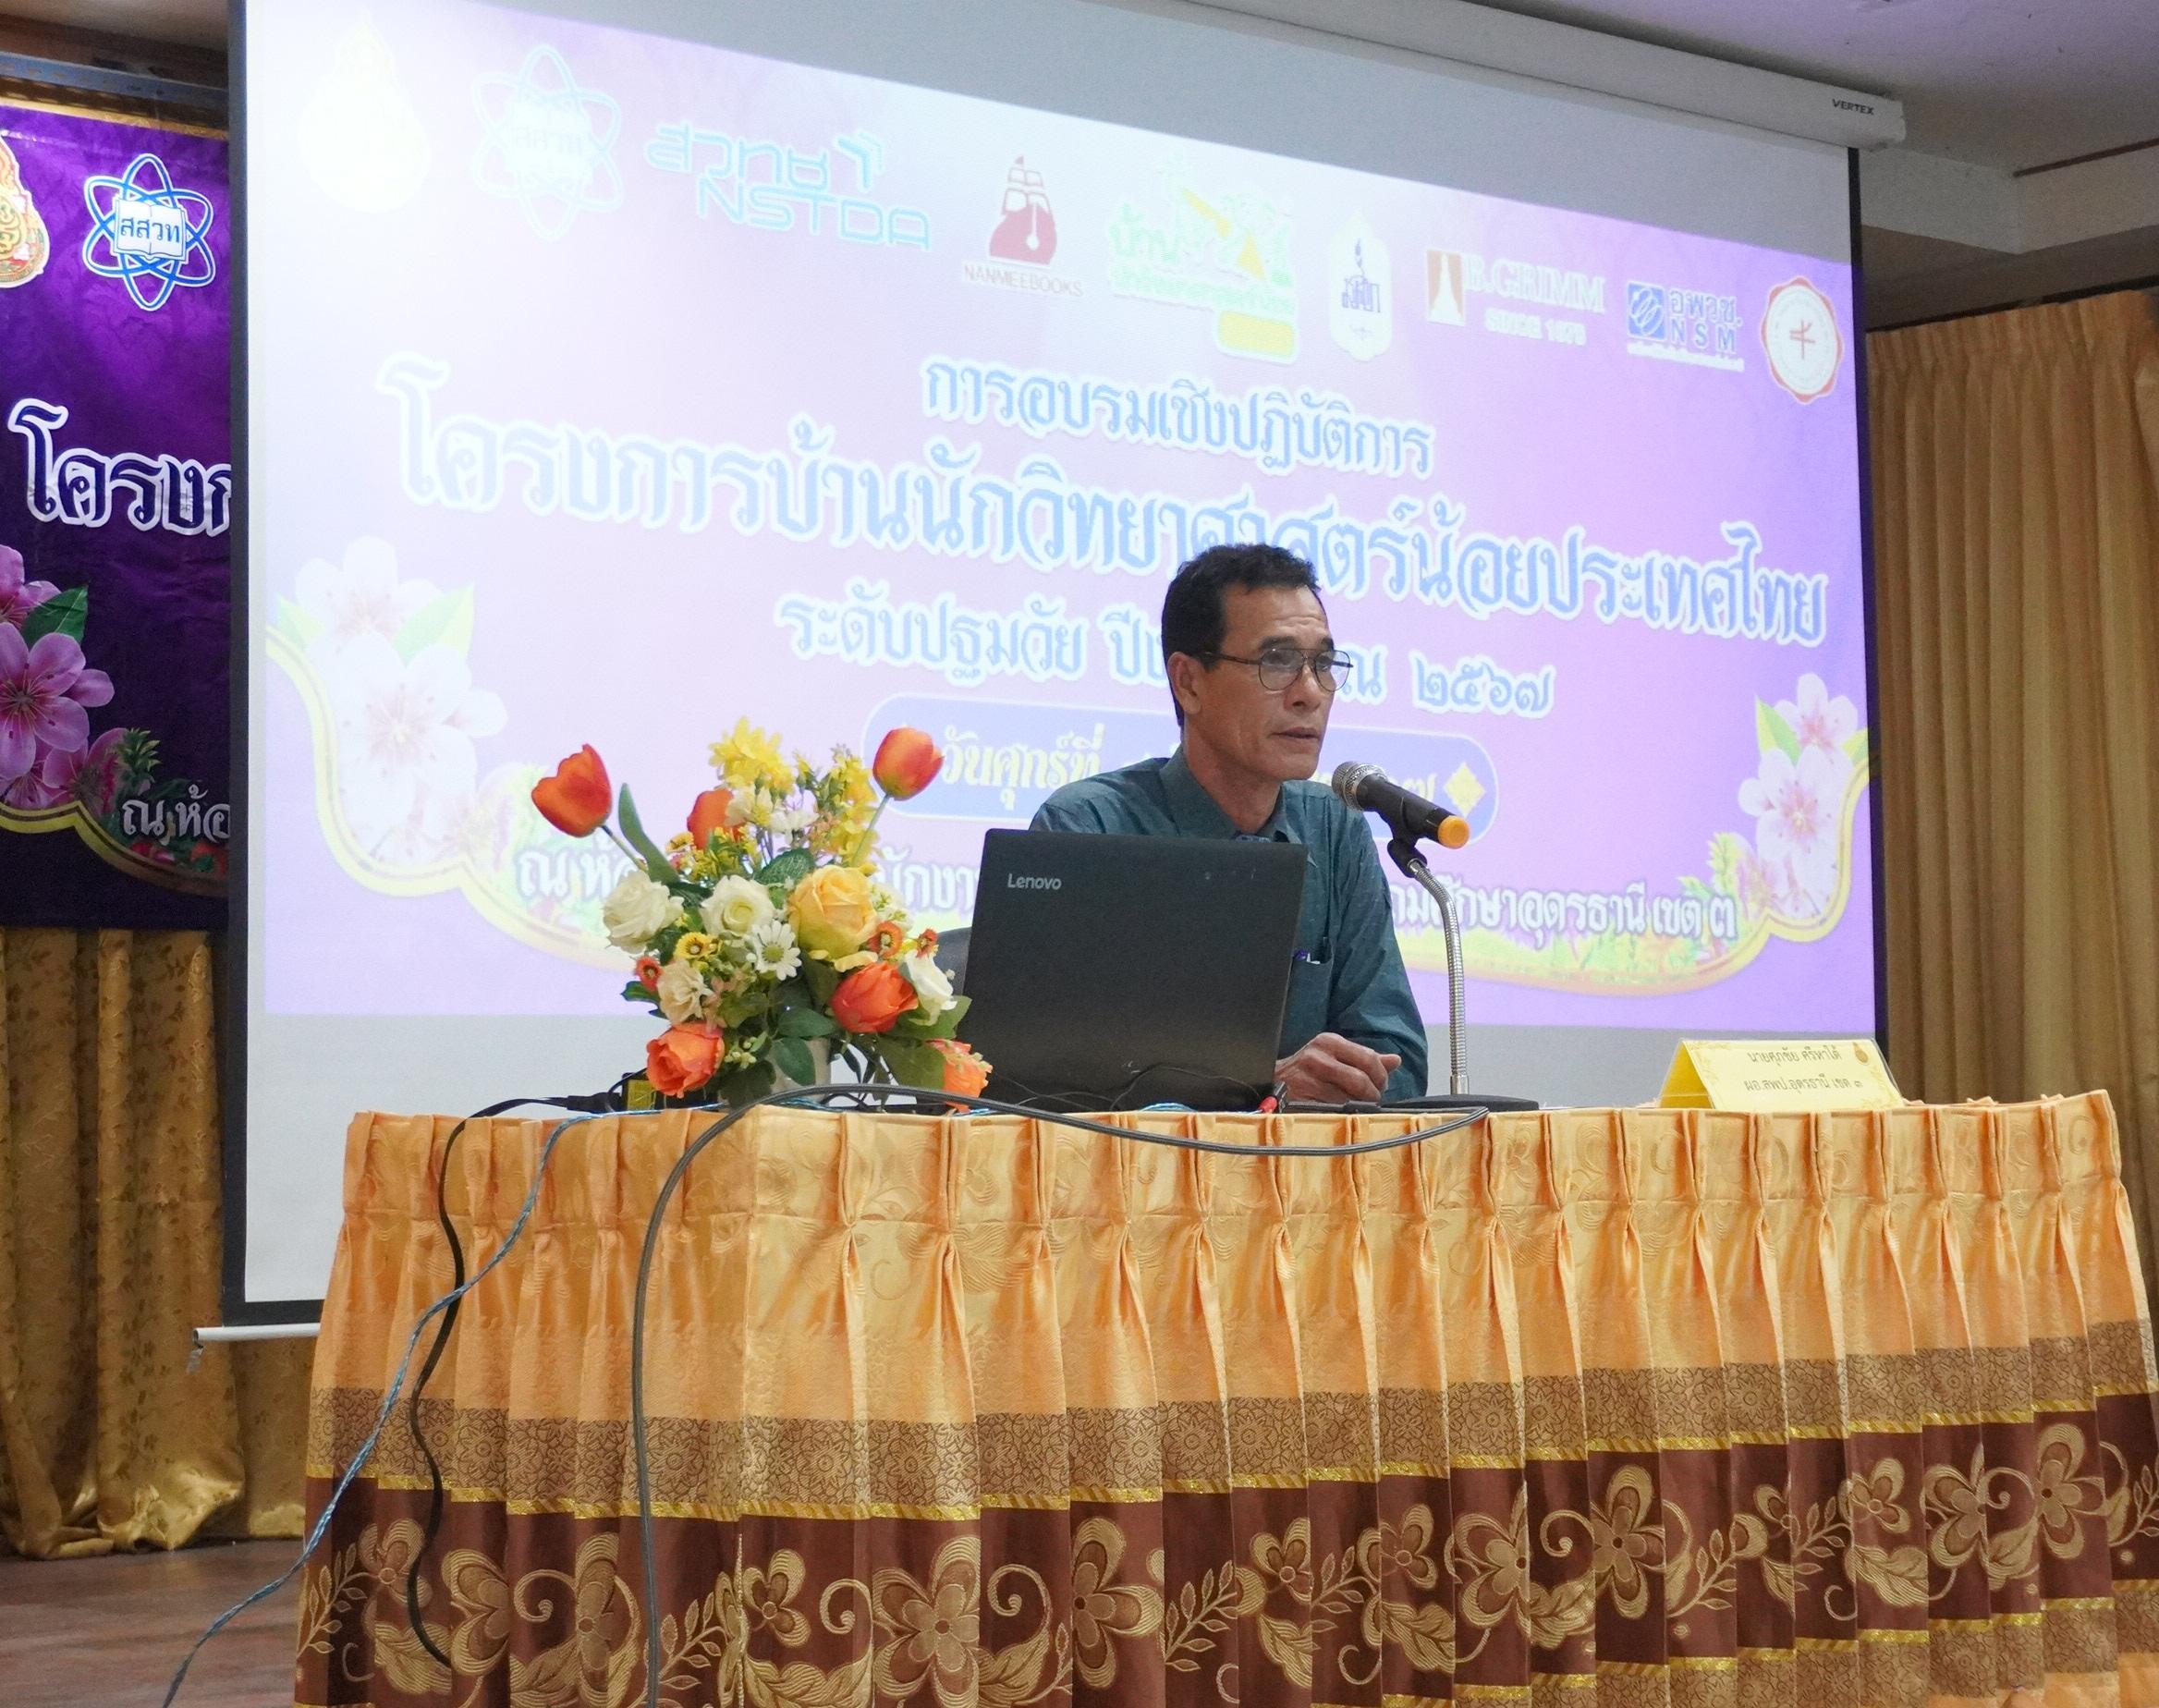 การอบรมเชิงปฏิบัติการโครงการบ้านนักวิทยาศาสตร์น้อยประเทศไทย ระดับปฐมวัย ปีงบประมาณ 2567